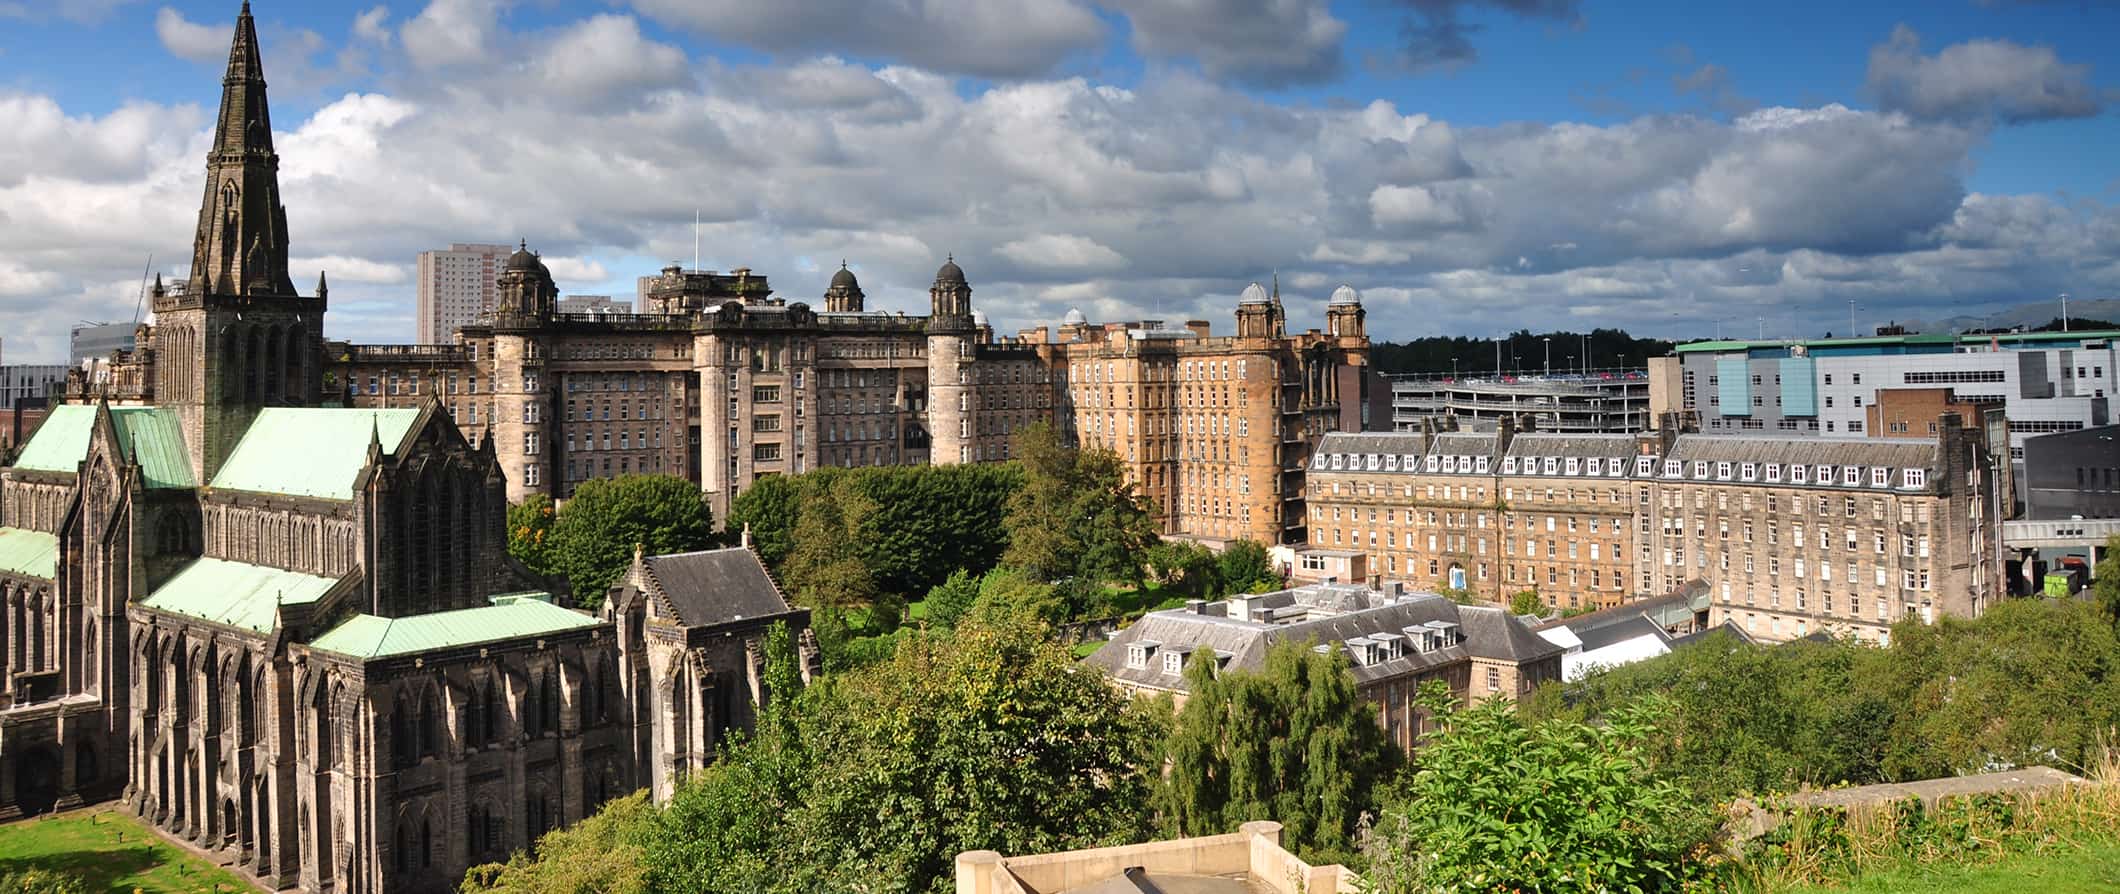 Edifícios históricos enchendo o horizonte de Glasgow, na Escócia, em um dia ensolarado de verão.